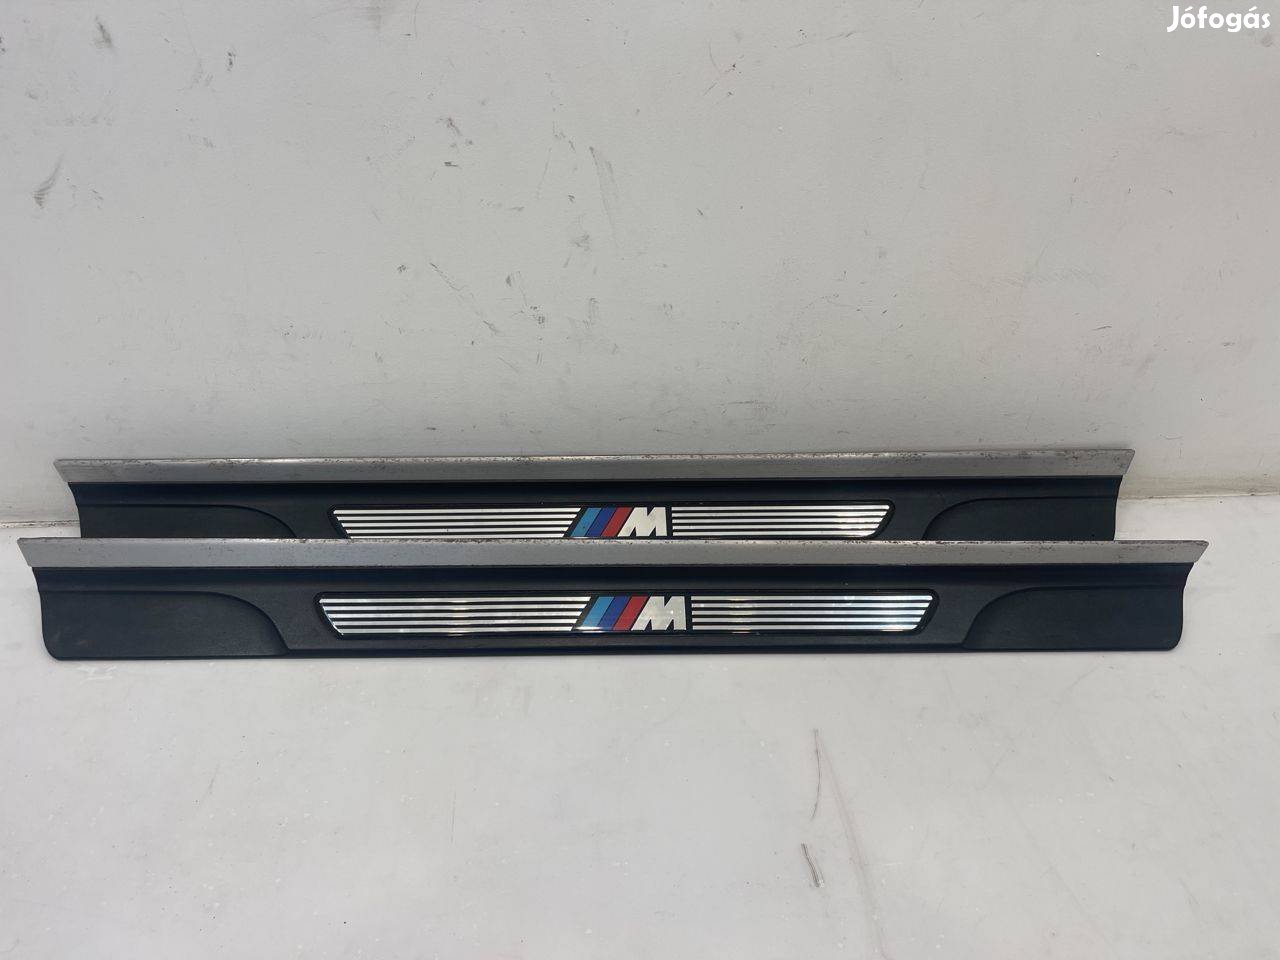 BMW E46 coupe M csomagos küszöbbelépő díszléc pár